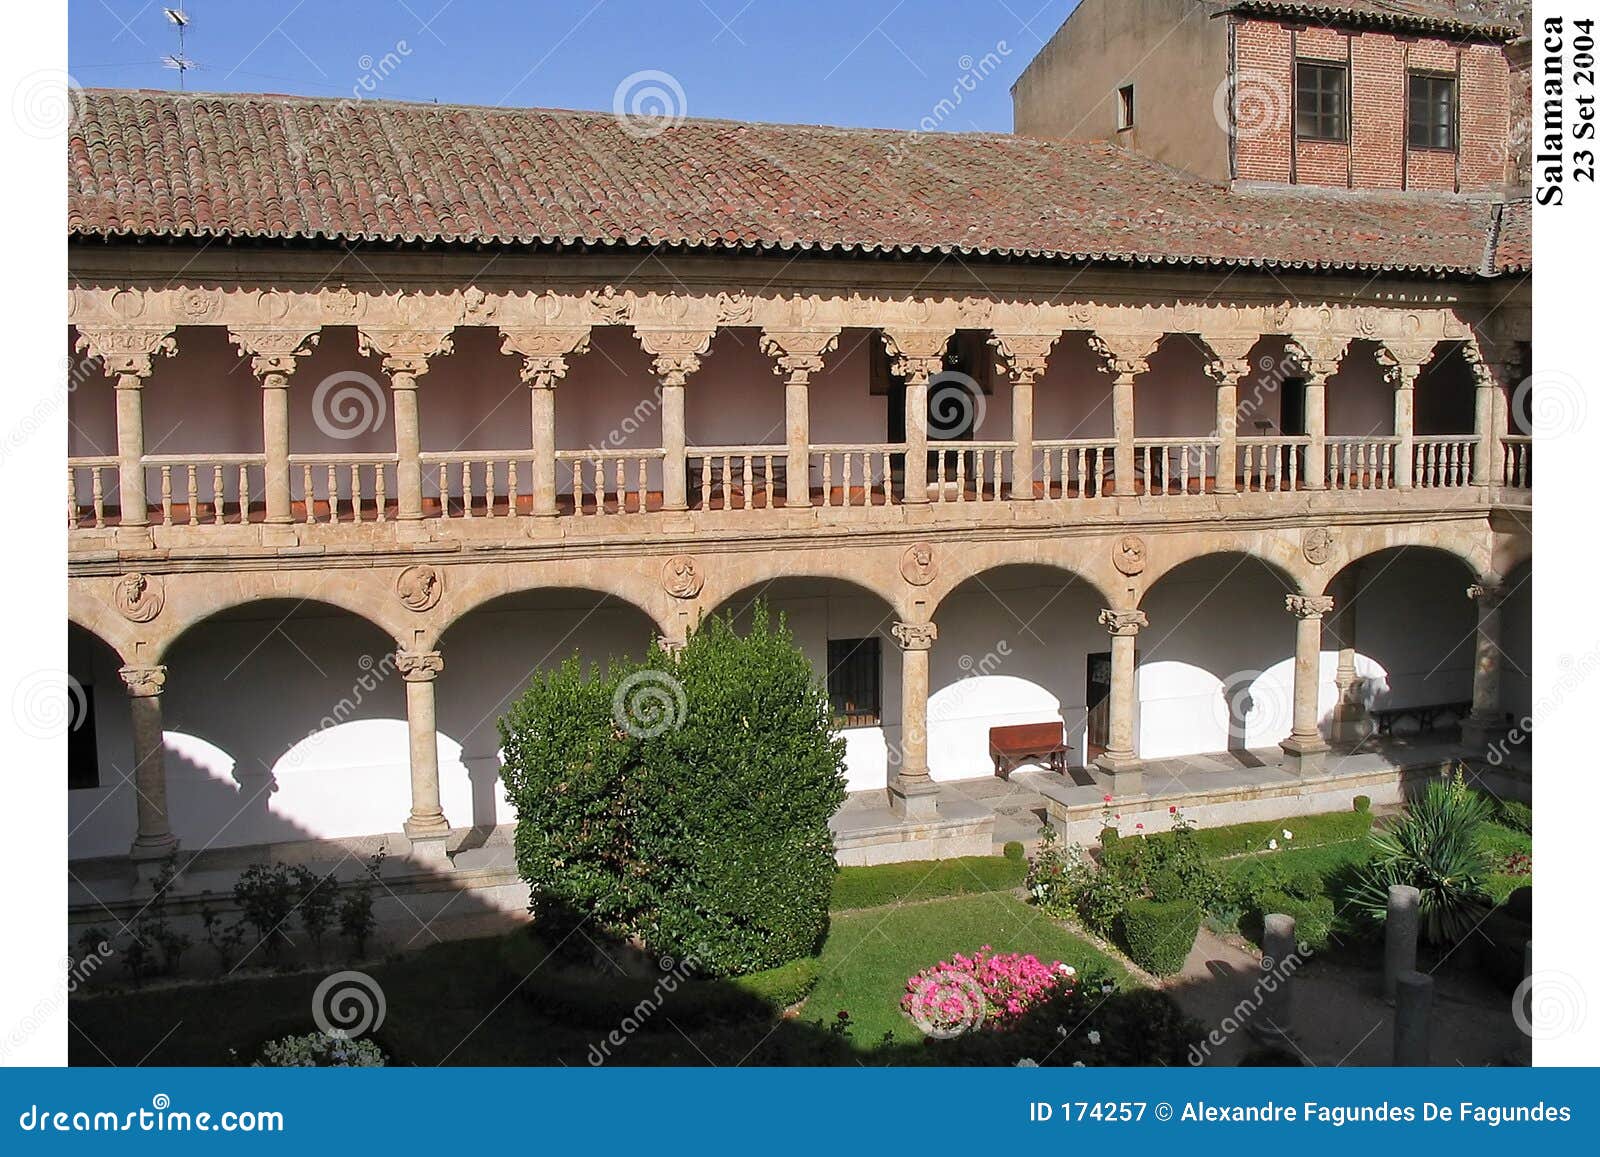 convento de las duenas claustro salamanca spain